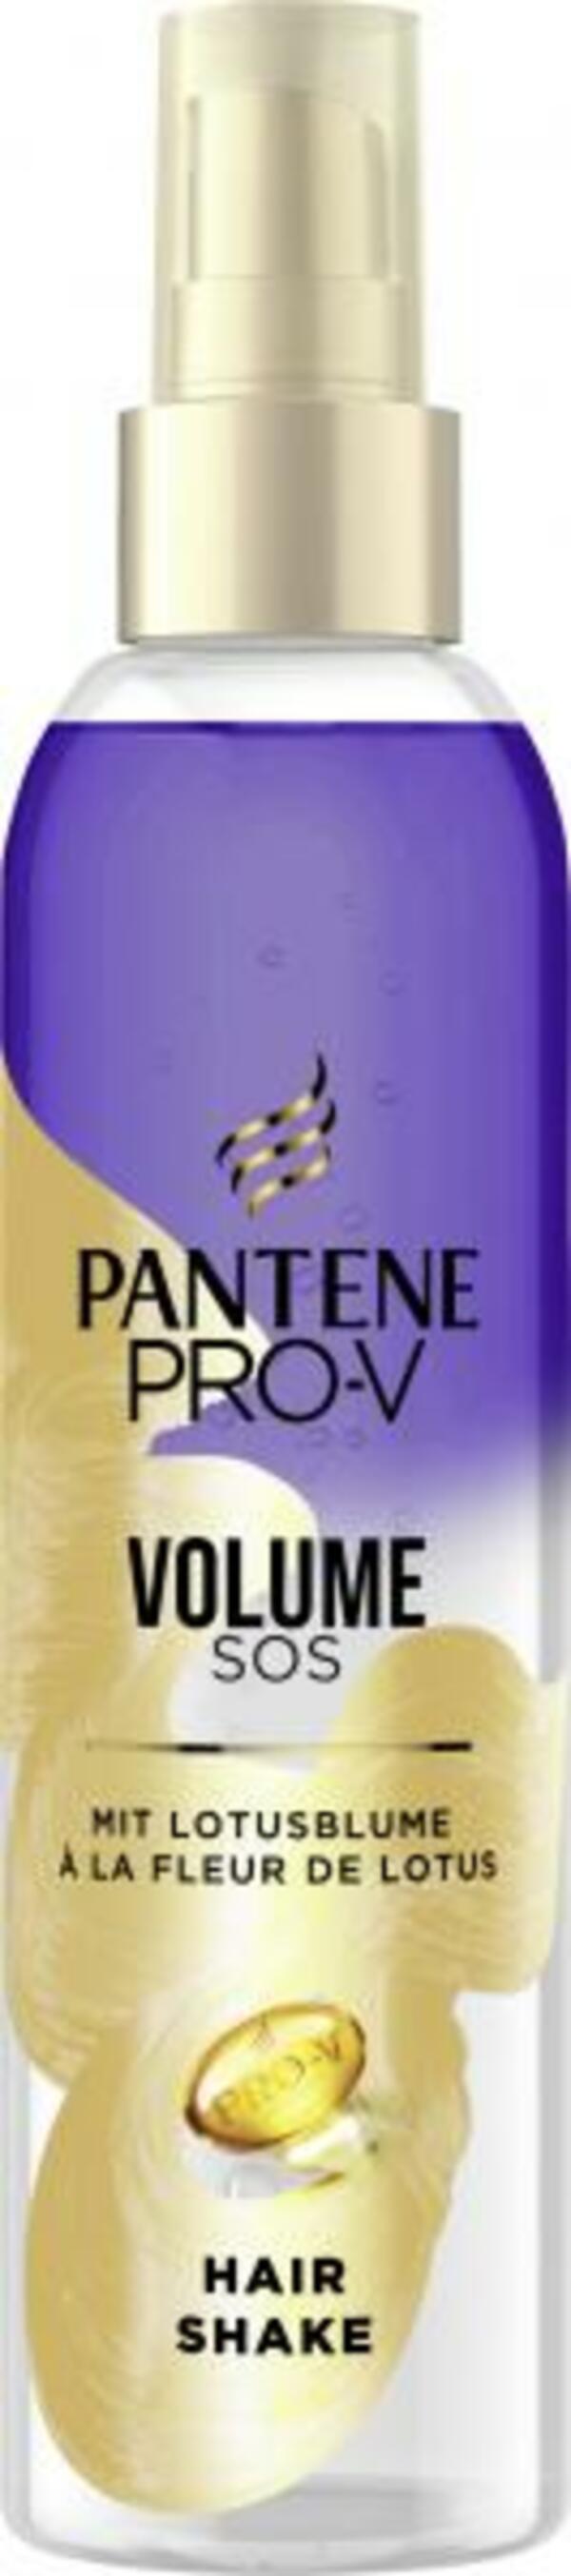 Bild 1 von Pantene Pro-V Volume SOS Hair Shake Haarpflegespray